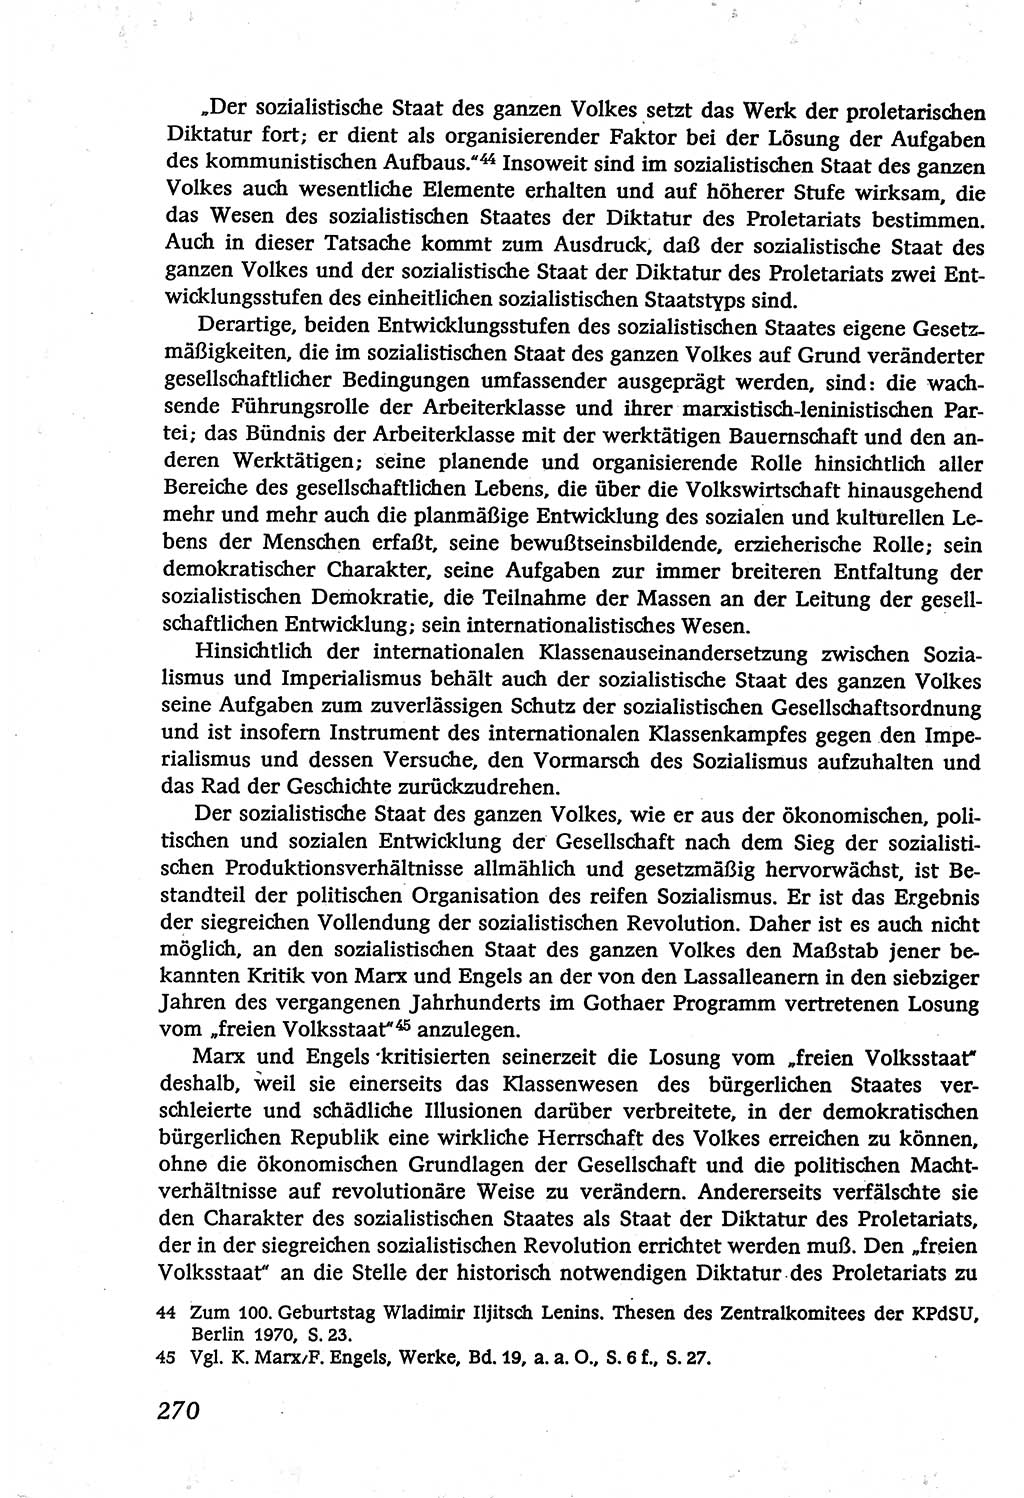 Marxistisch-leninistische (ML) Staats- und Rechtstheorie [Deutsche Demokratische Republik (DDR)], Lehrbuch 1980, Seite 270 (ML St.-R.-Th. DDR Lb. 1980, S. 270)